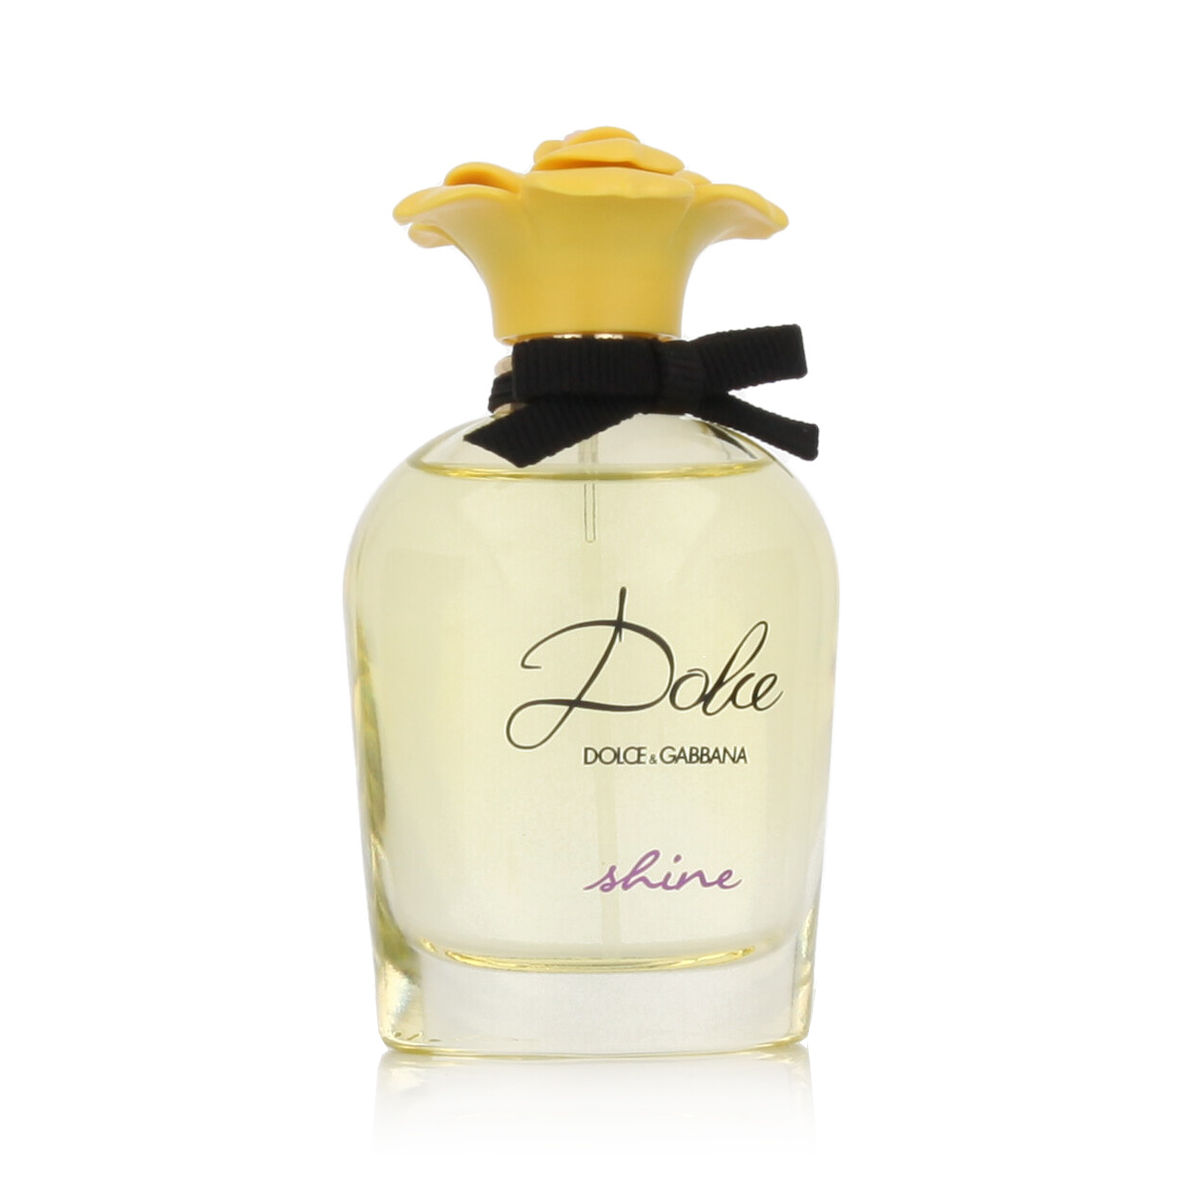 Dolce & Gabbana Dolce Shine 5 ml kvepalų mėginukas (atomaizeris) Moterims